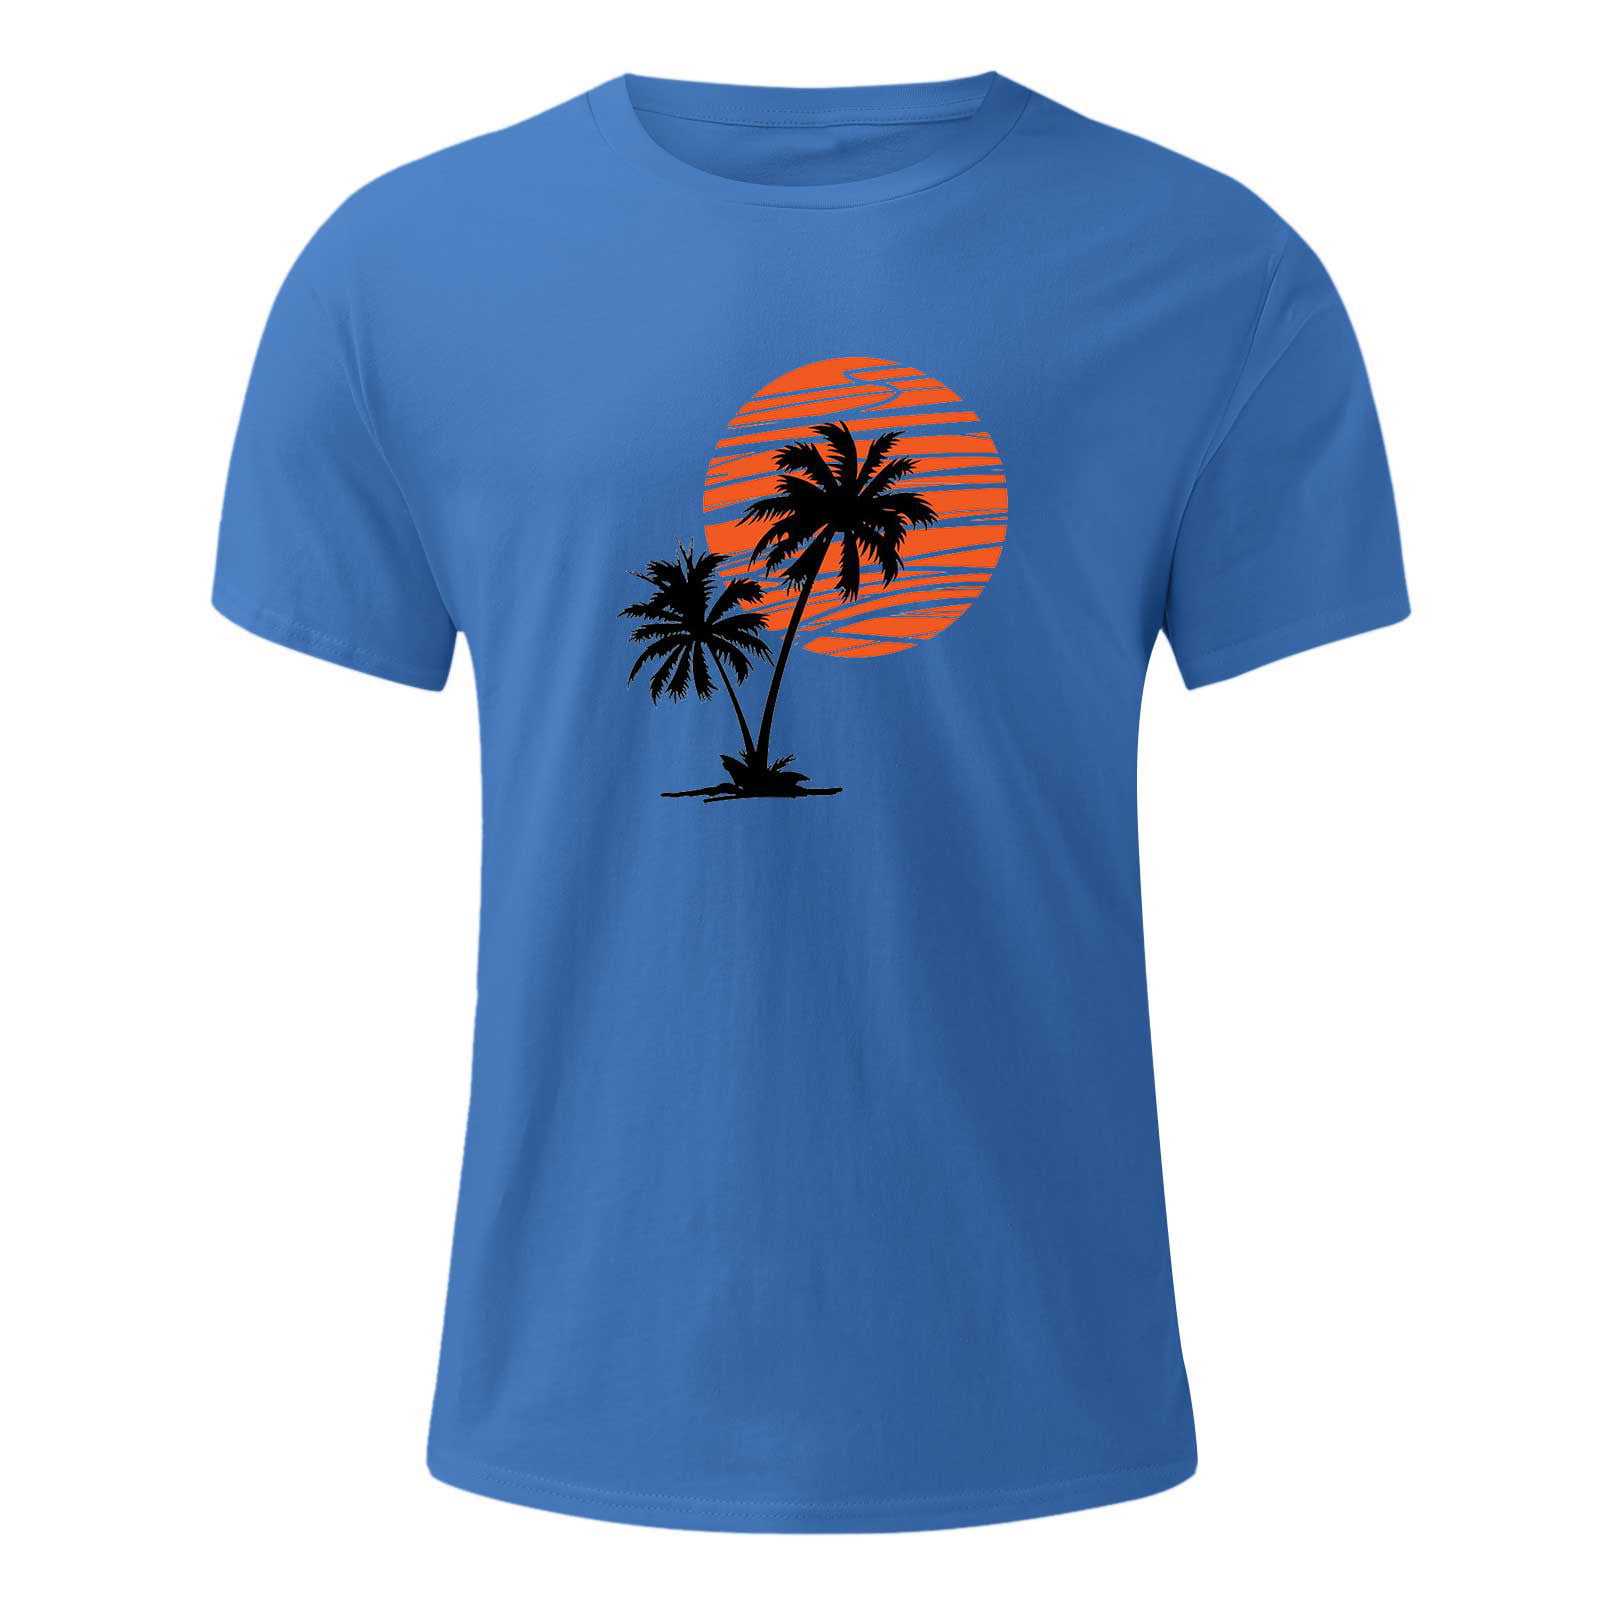 IEPOFG Men Summer T Shirt Short Sleeve 3D Printed Beach Casual